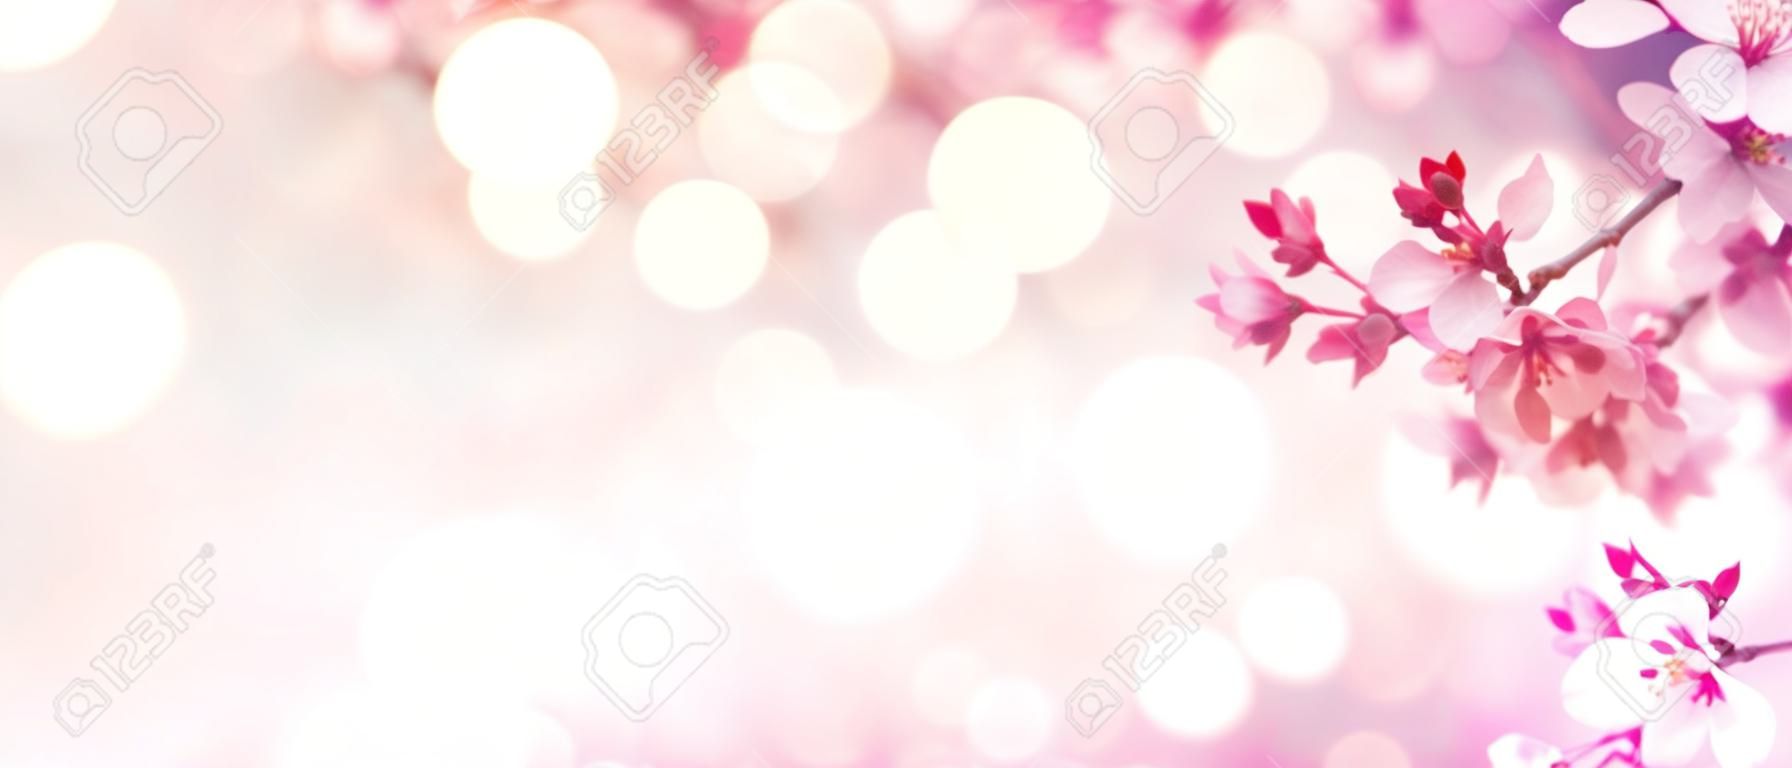 Borda da flor da mola com árvore florescente cor-de-rosa